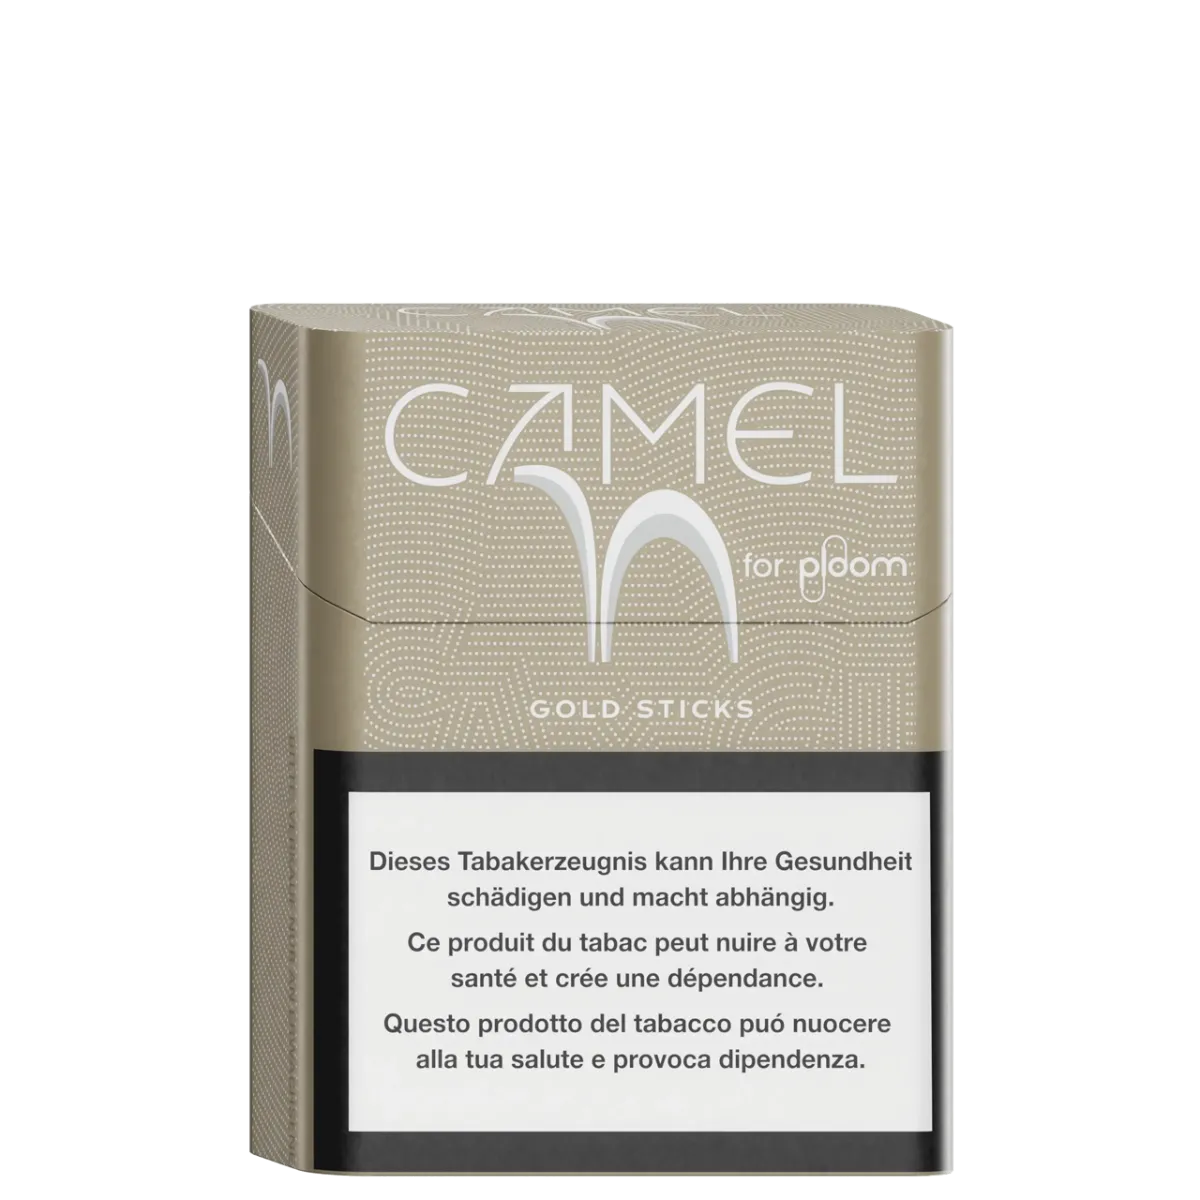 Camel Gold sticks pour ploom X advanced - ccoté gauche
